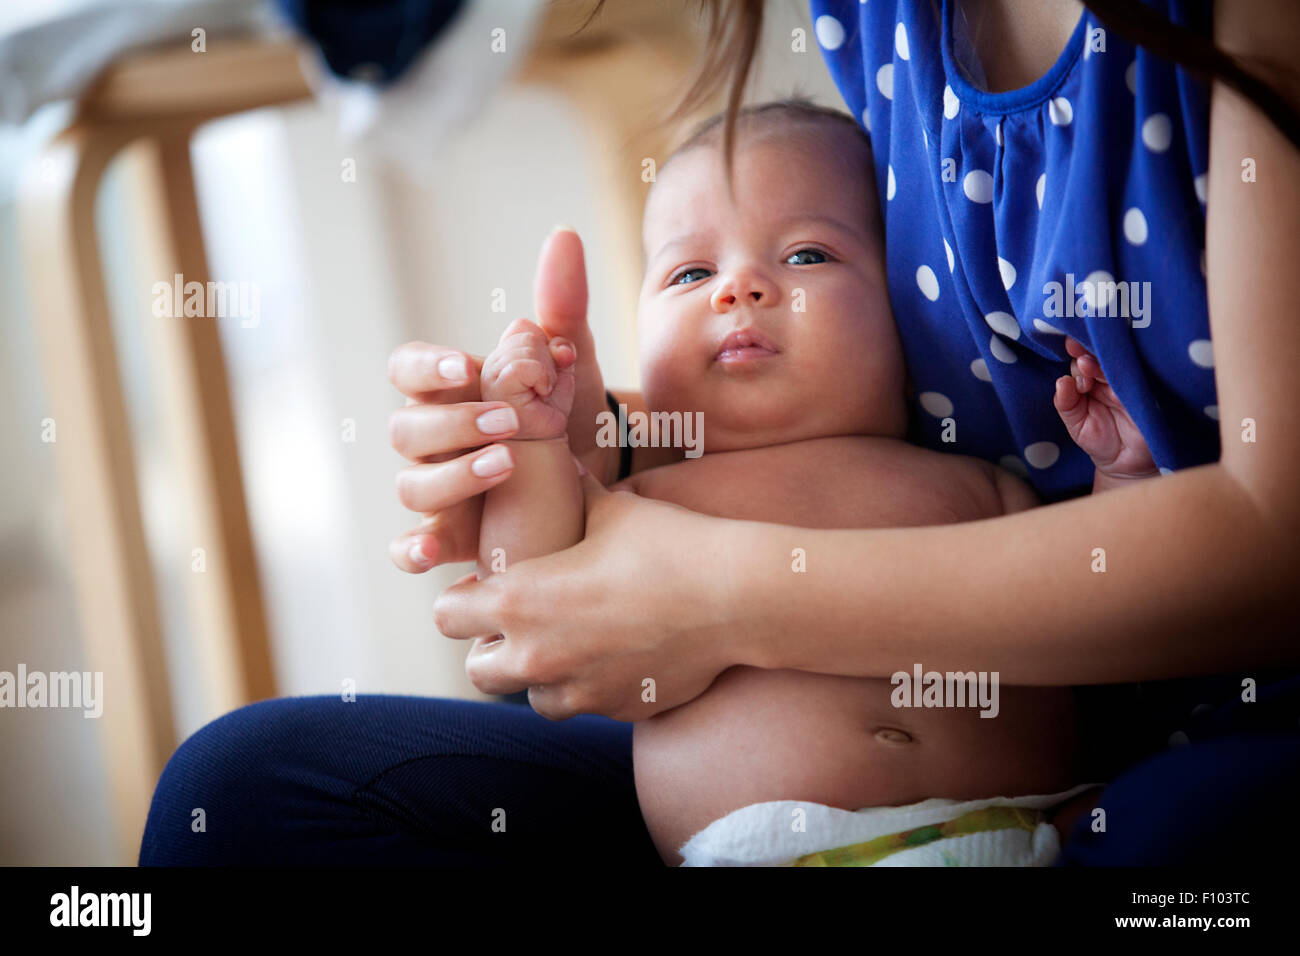 Recibiendo el masaje infantil Foto de stock